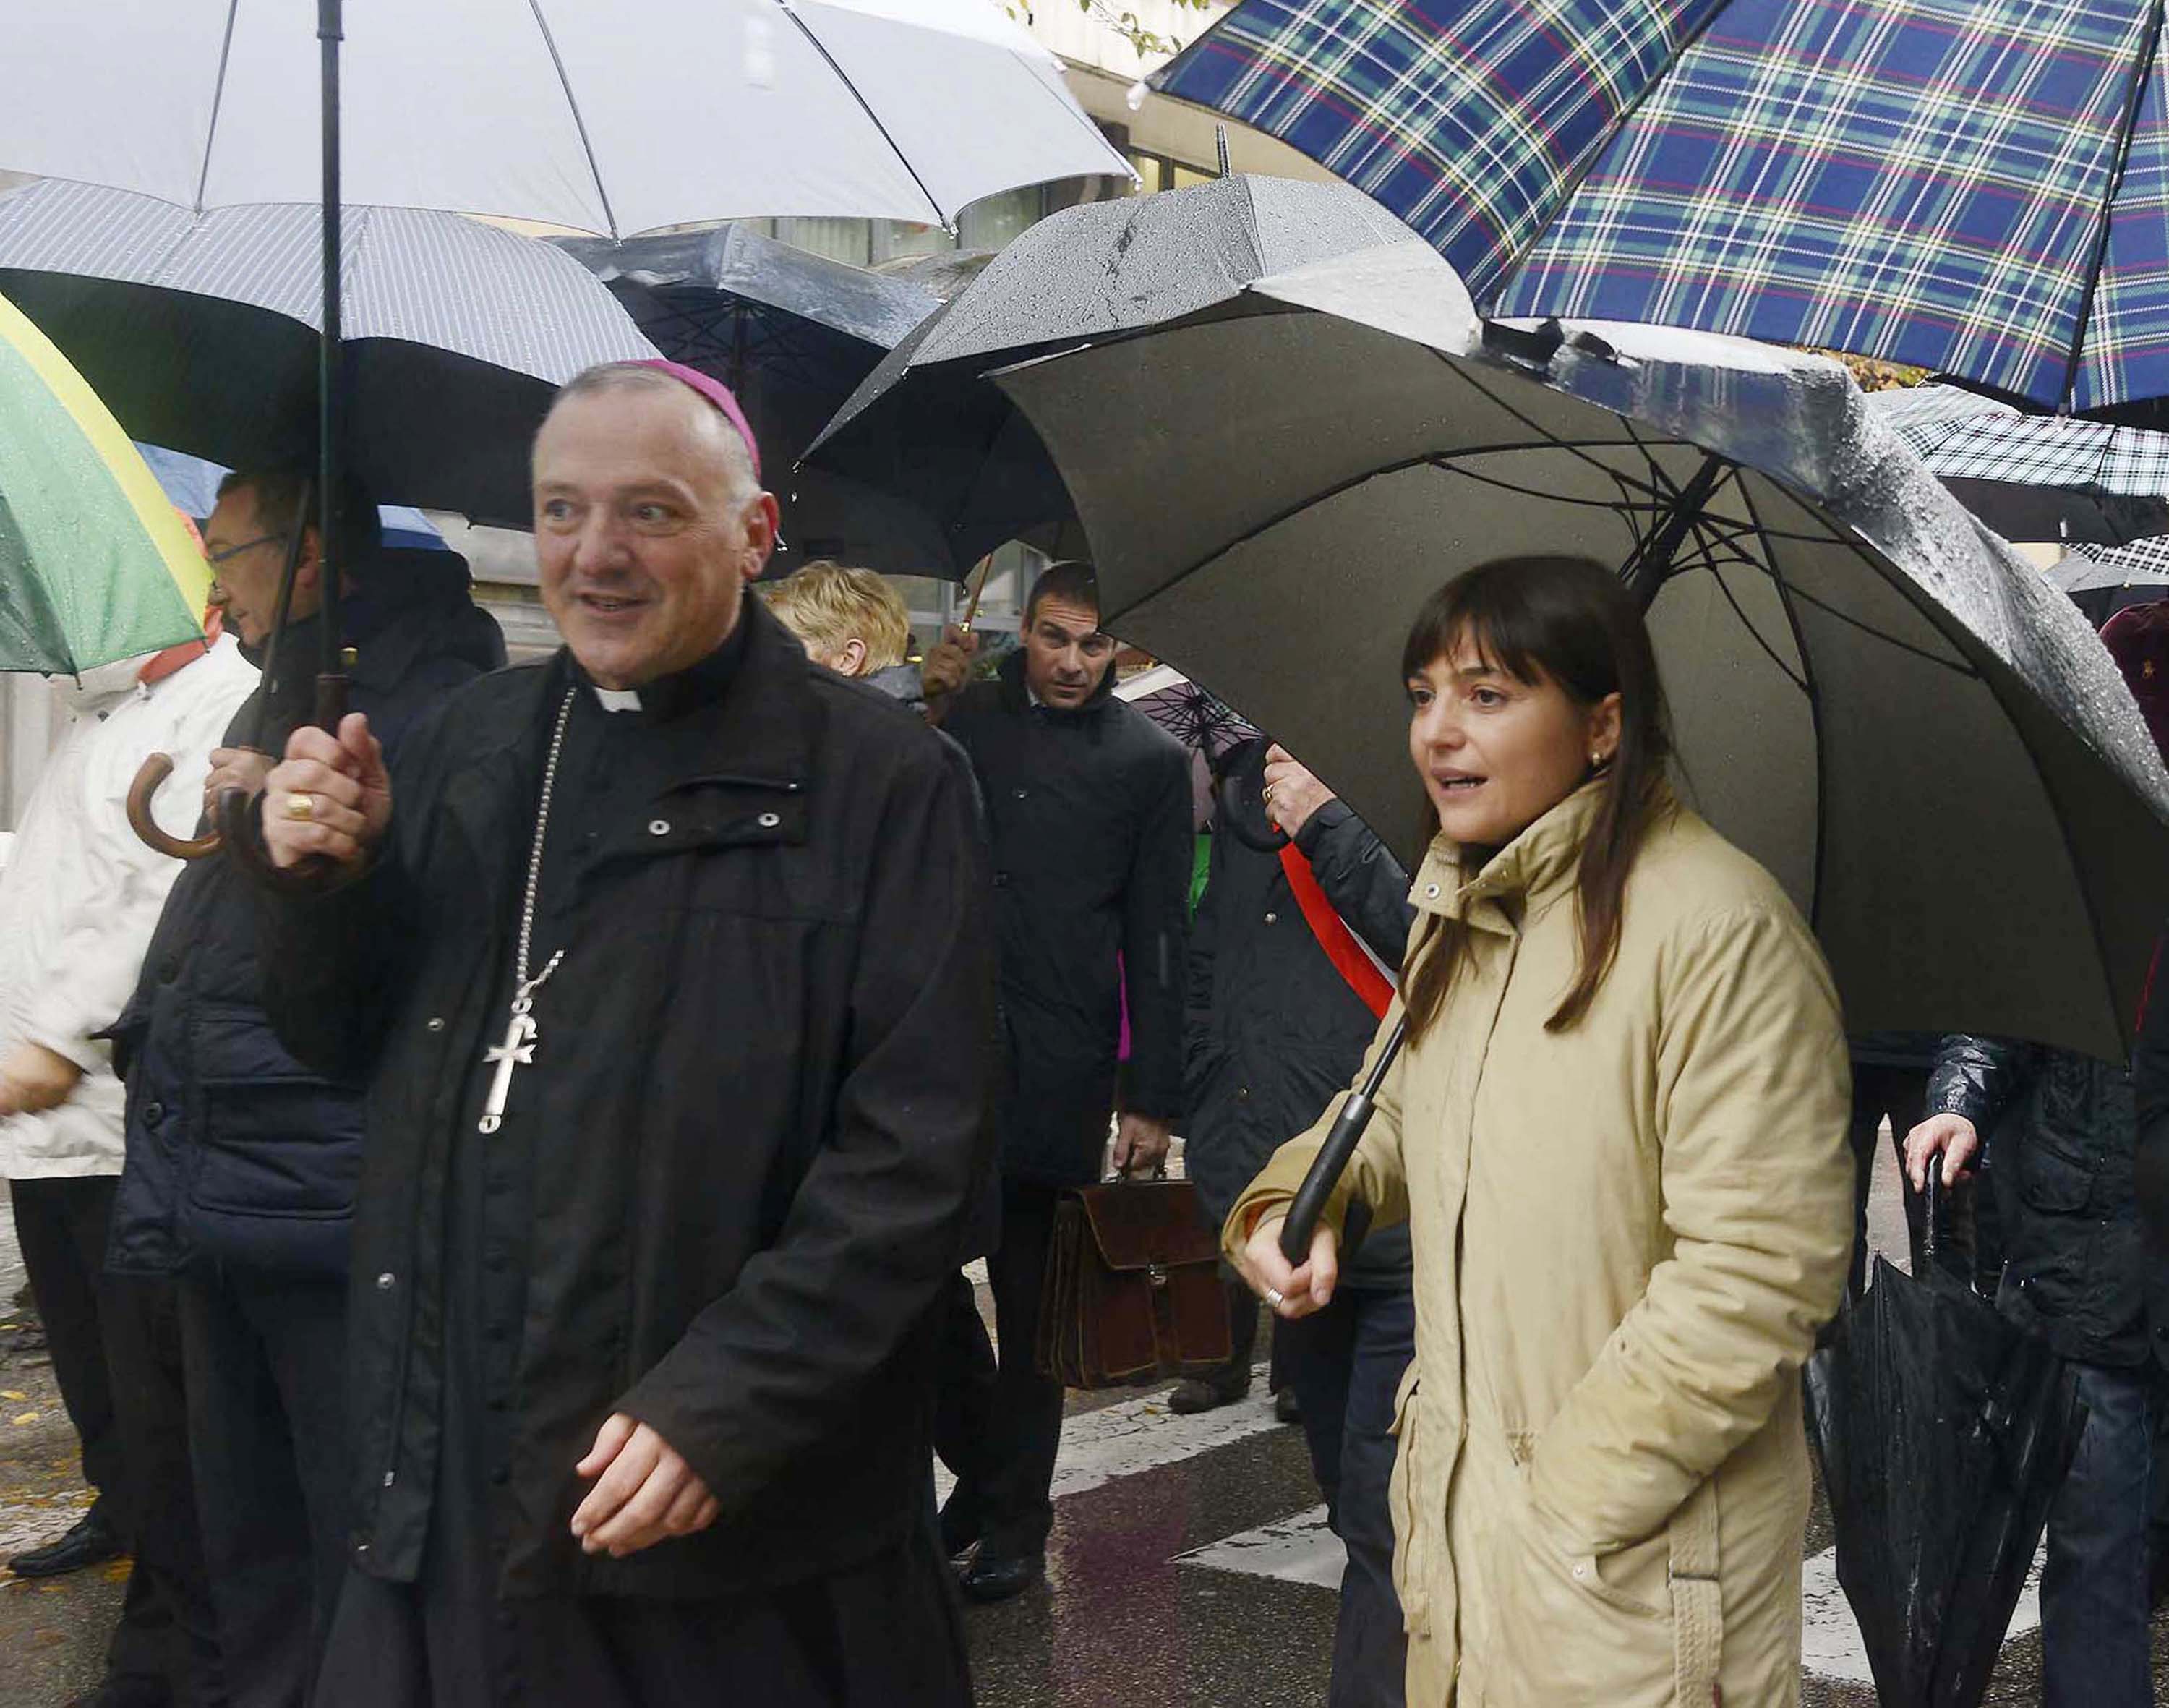 Giuseppe Pellegrini (Vescovo Pordenone) e Debora Serracchiani (Presidente Friuli Venezia Giulia) alla manifestazione indetta in occasione dello sciopero generale. (Pordenone 15/11/13)